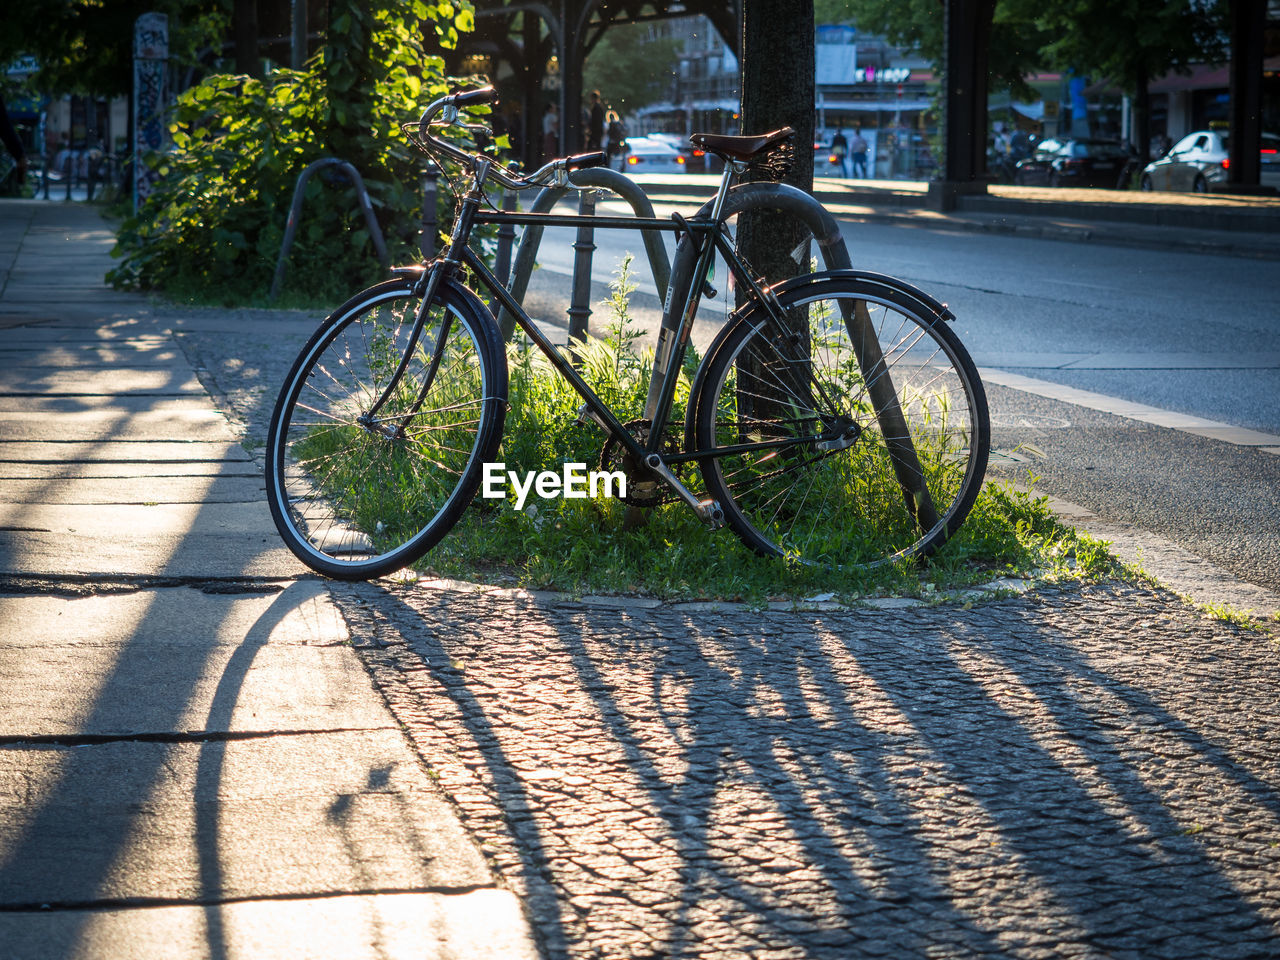 Bicycle parked on street in berlin kreuzberg